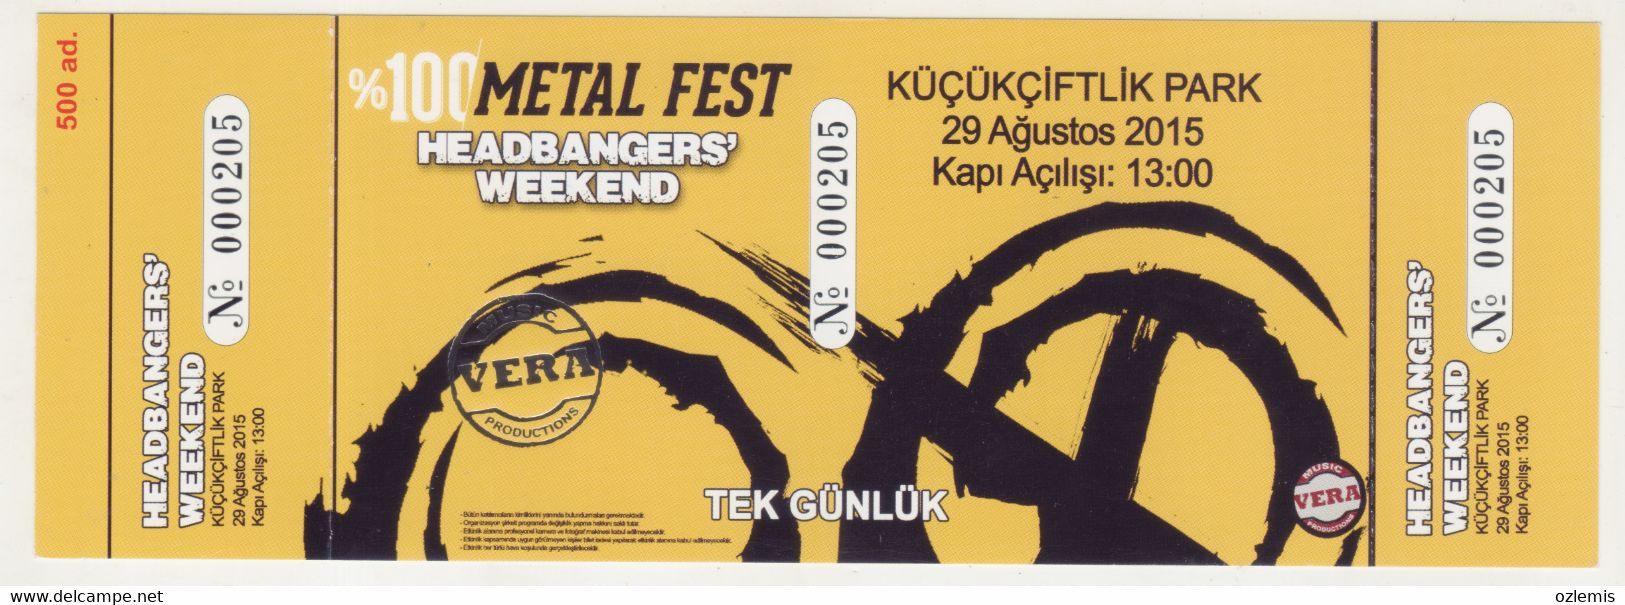 HEADBANGERS' WEEKEND,%100 METAL FEST 2015 TICKET ISTANBUL TURKEY - Konzertkarten